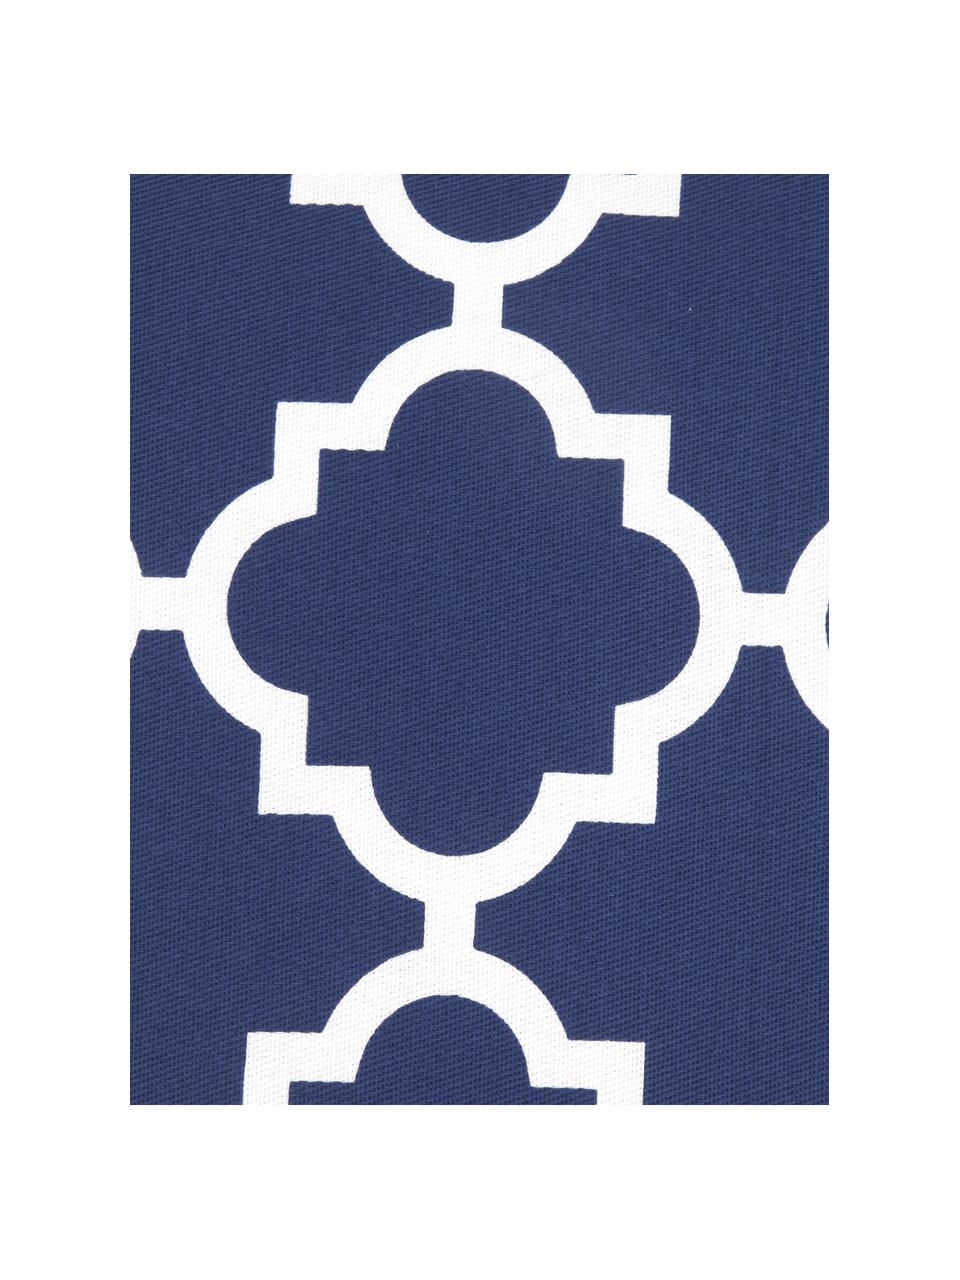 Kissenhülle Lana in Marineblau mit grafischem Muster, 100% Baumwolle, Marineblau, Weiß, B 45 x L 45 cm